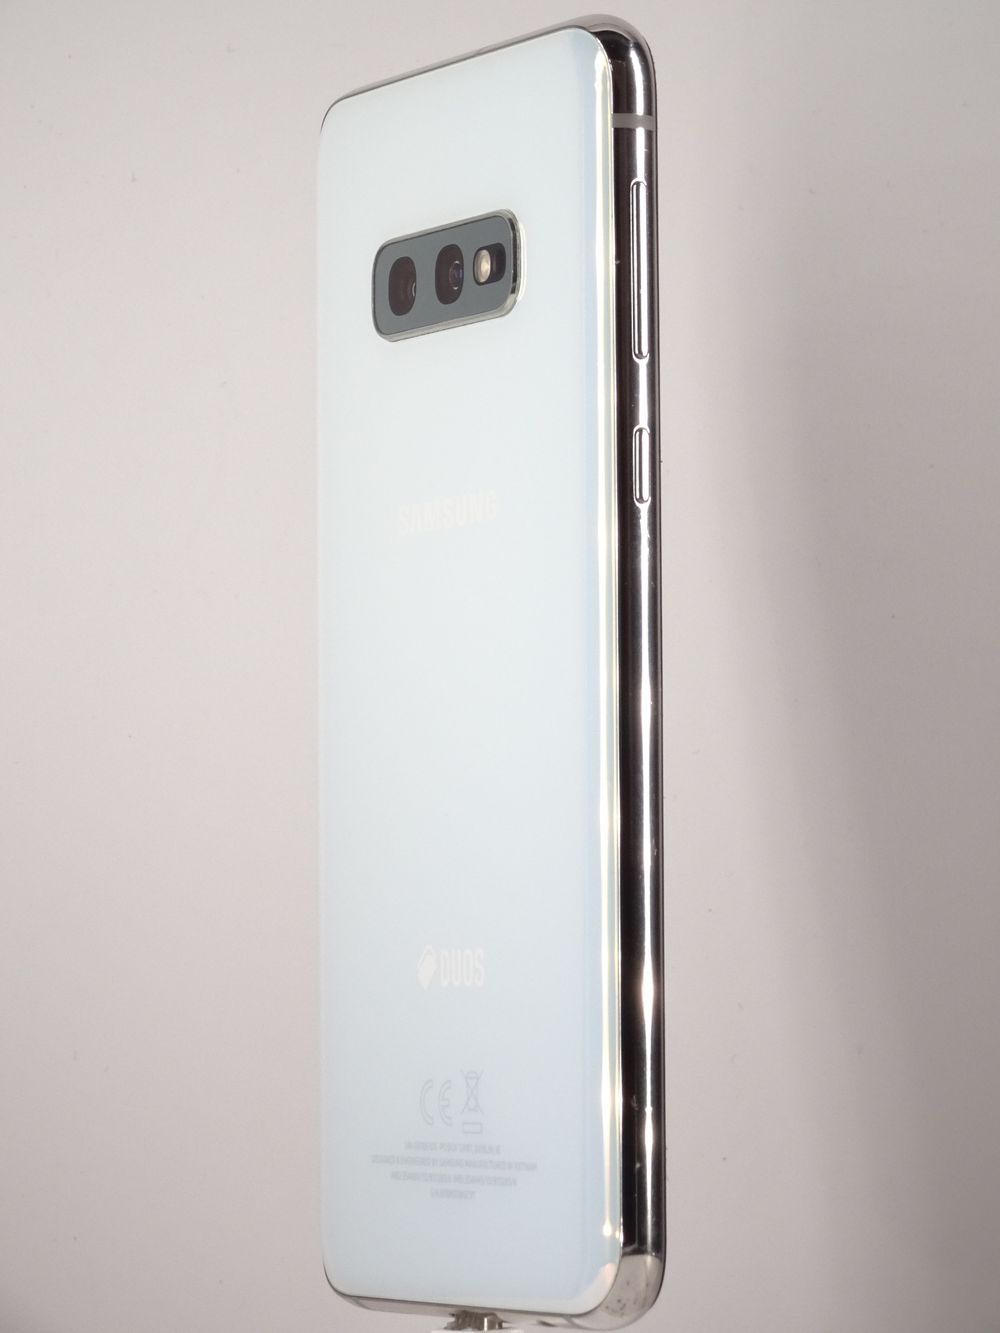 Мобилен телефон Samsung, Galaxy S10 e, 256 GB, Prism White,  Отлично